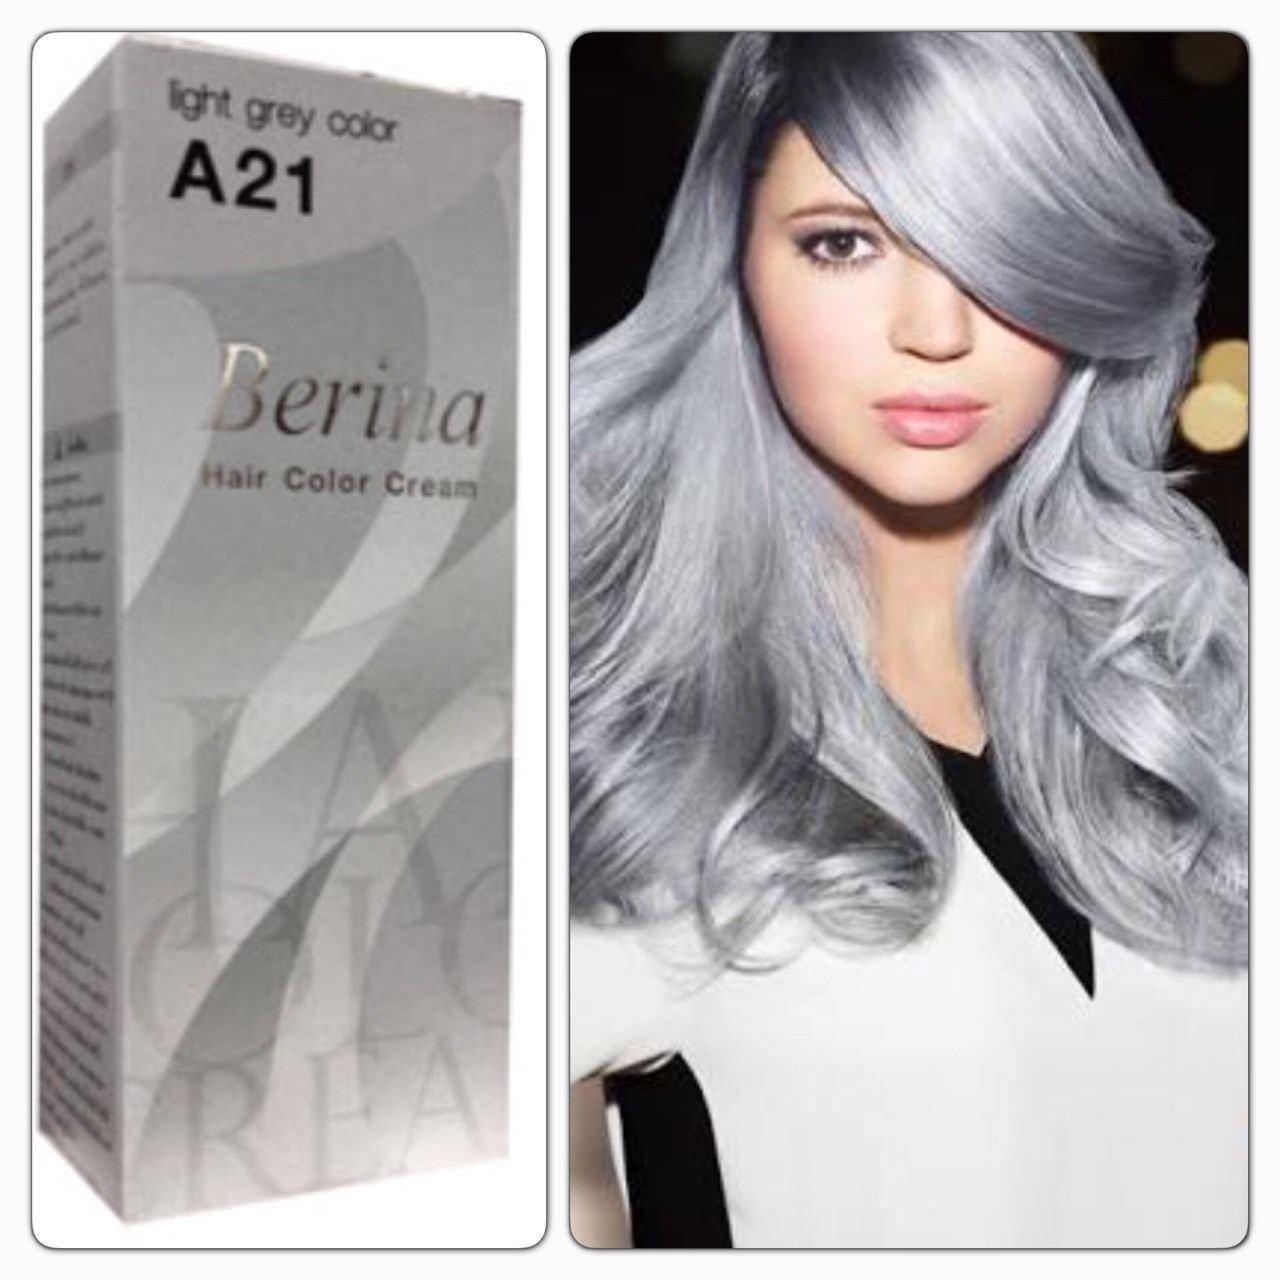 Краска для волос пепельных тонов. Berina Light Grey краска. Berina a21 Light Grey. Краска Berina hair Color. Berina hair Color Cream палитра.